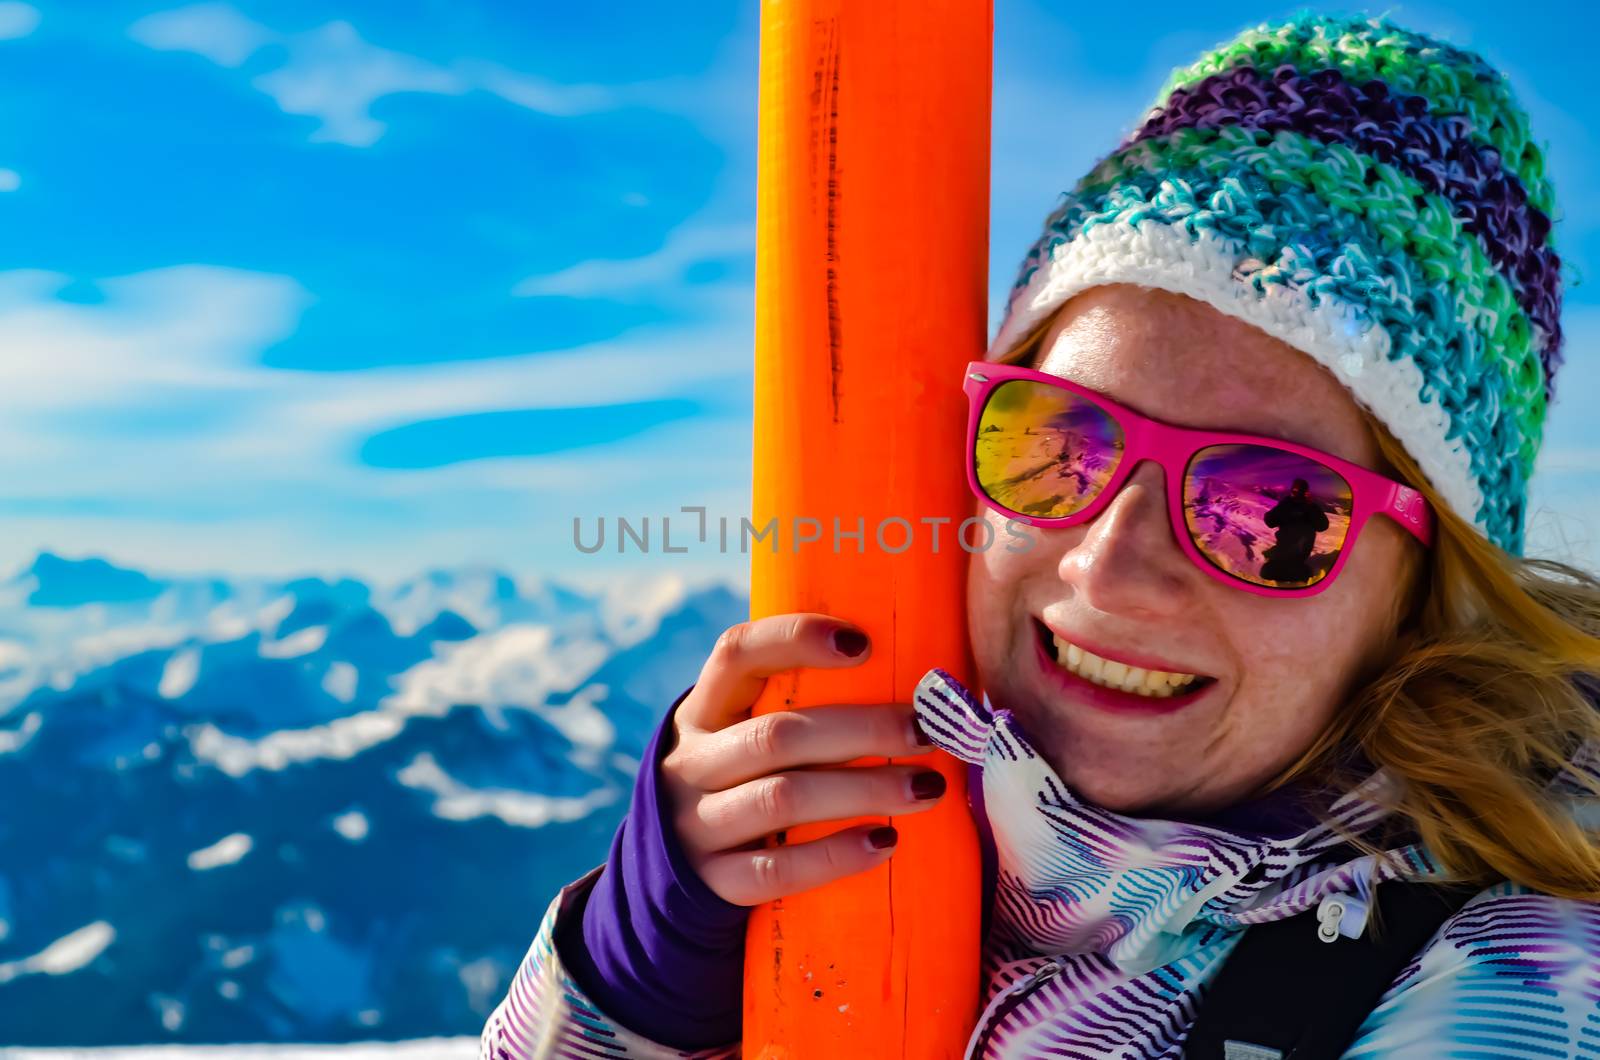 Women Hanging onto a Ski Post taken in the Mountains of Flachau Austria